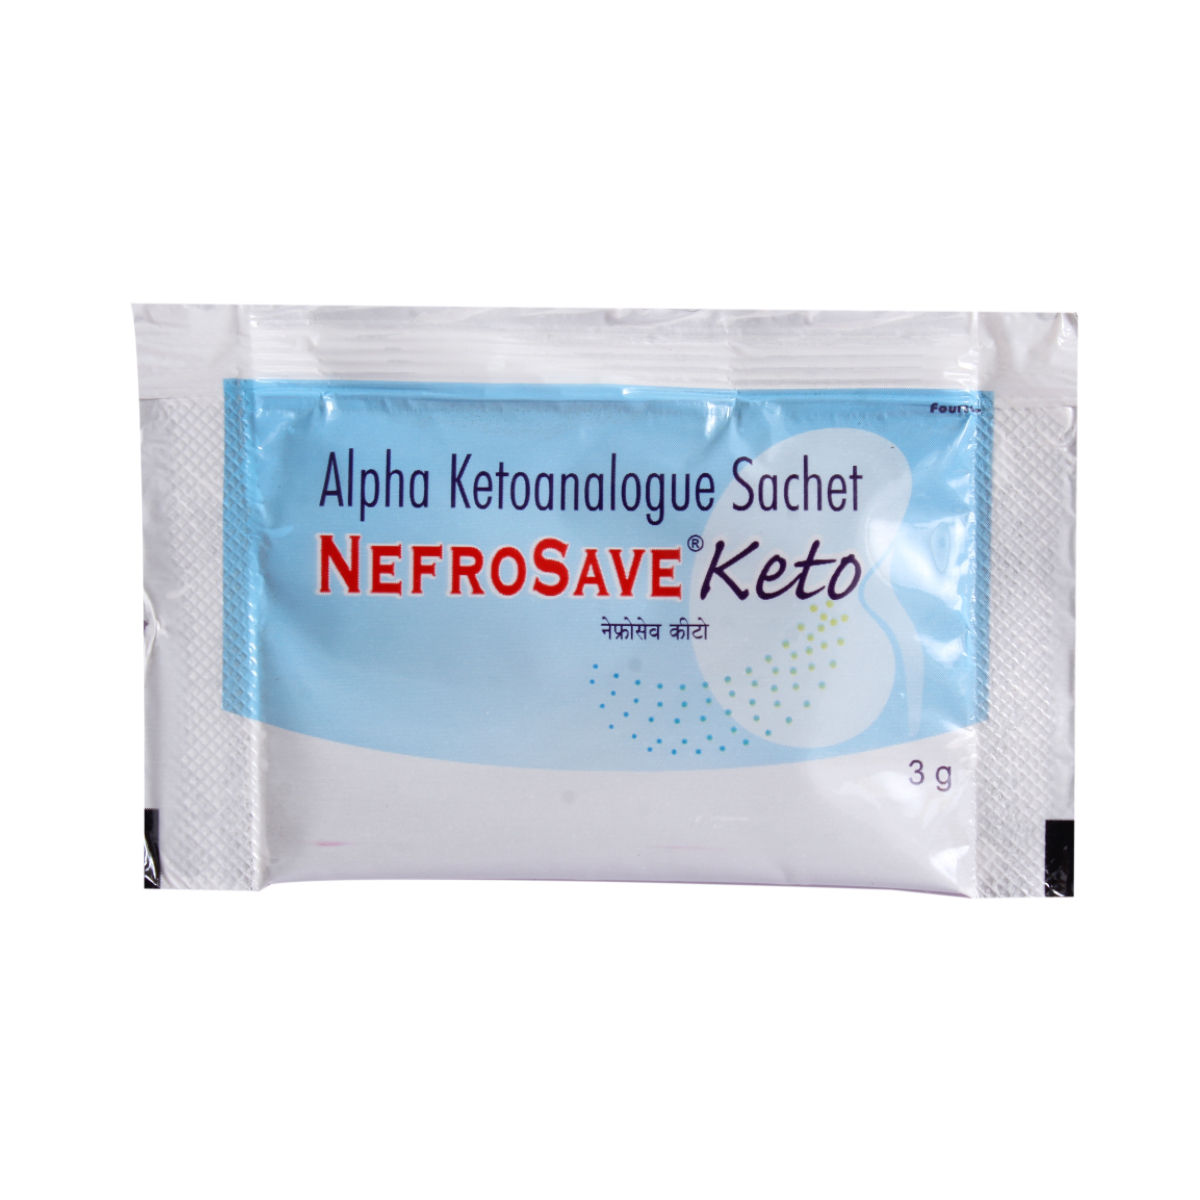 Buy Nefrosave Keto Sachet 3gm Online